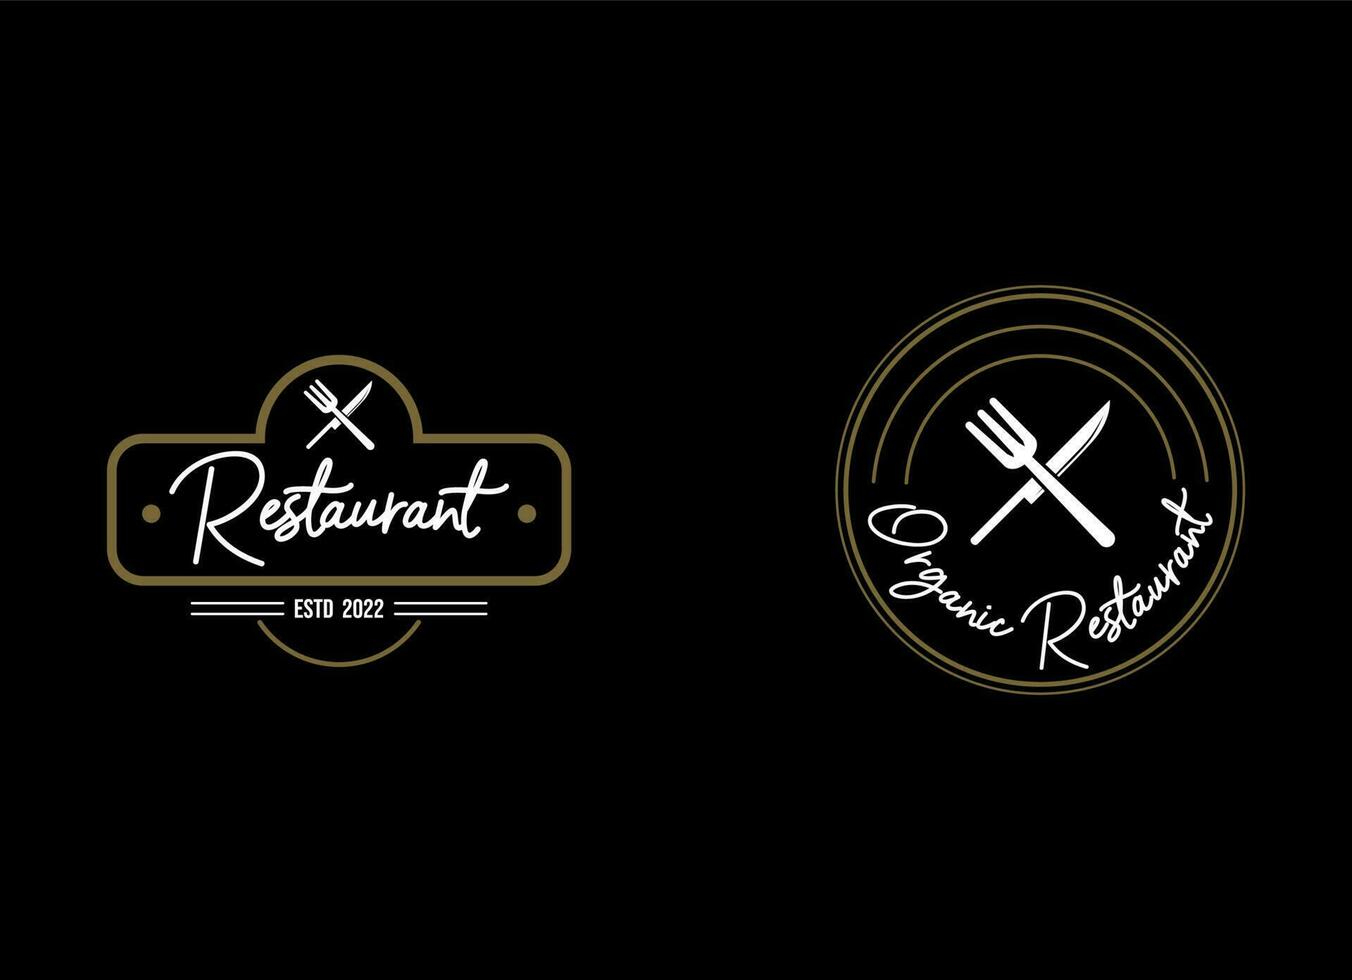 plantillas de logotipos con elementos monogramados y adornos florecientes para restaurantes vector